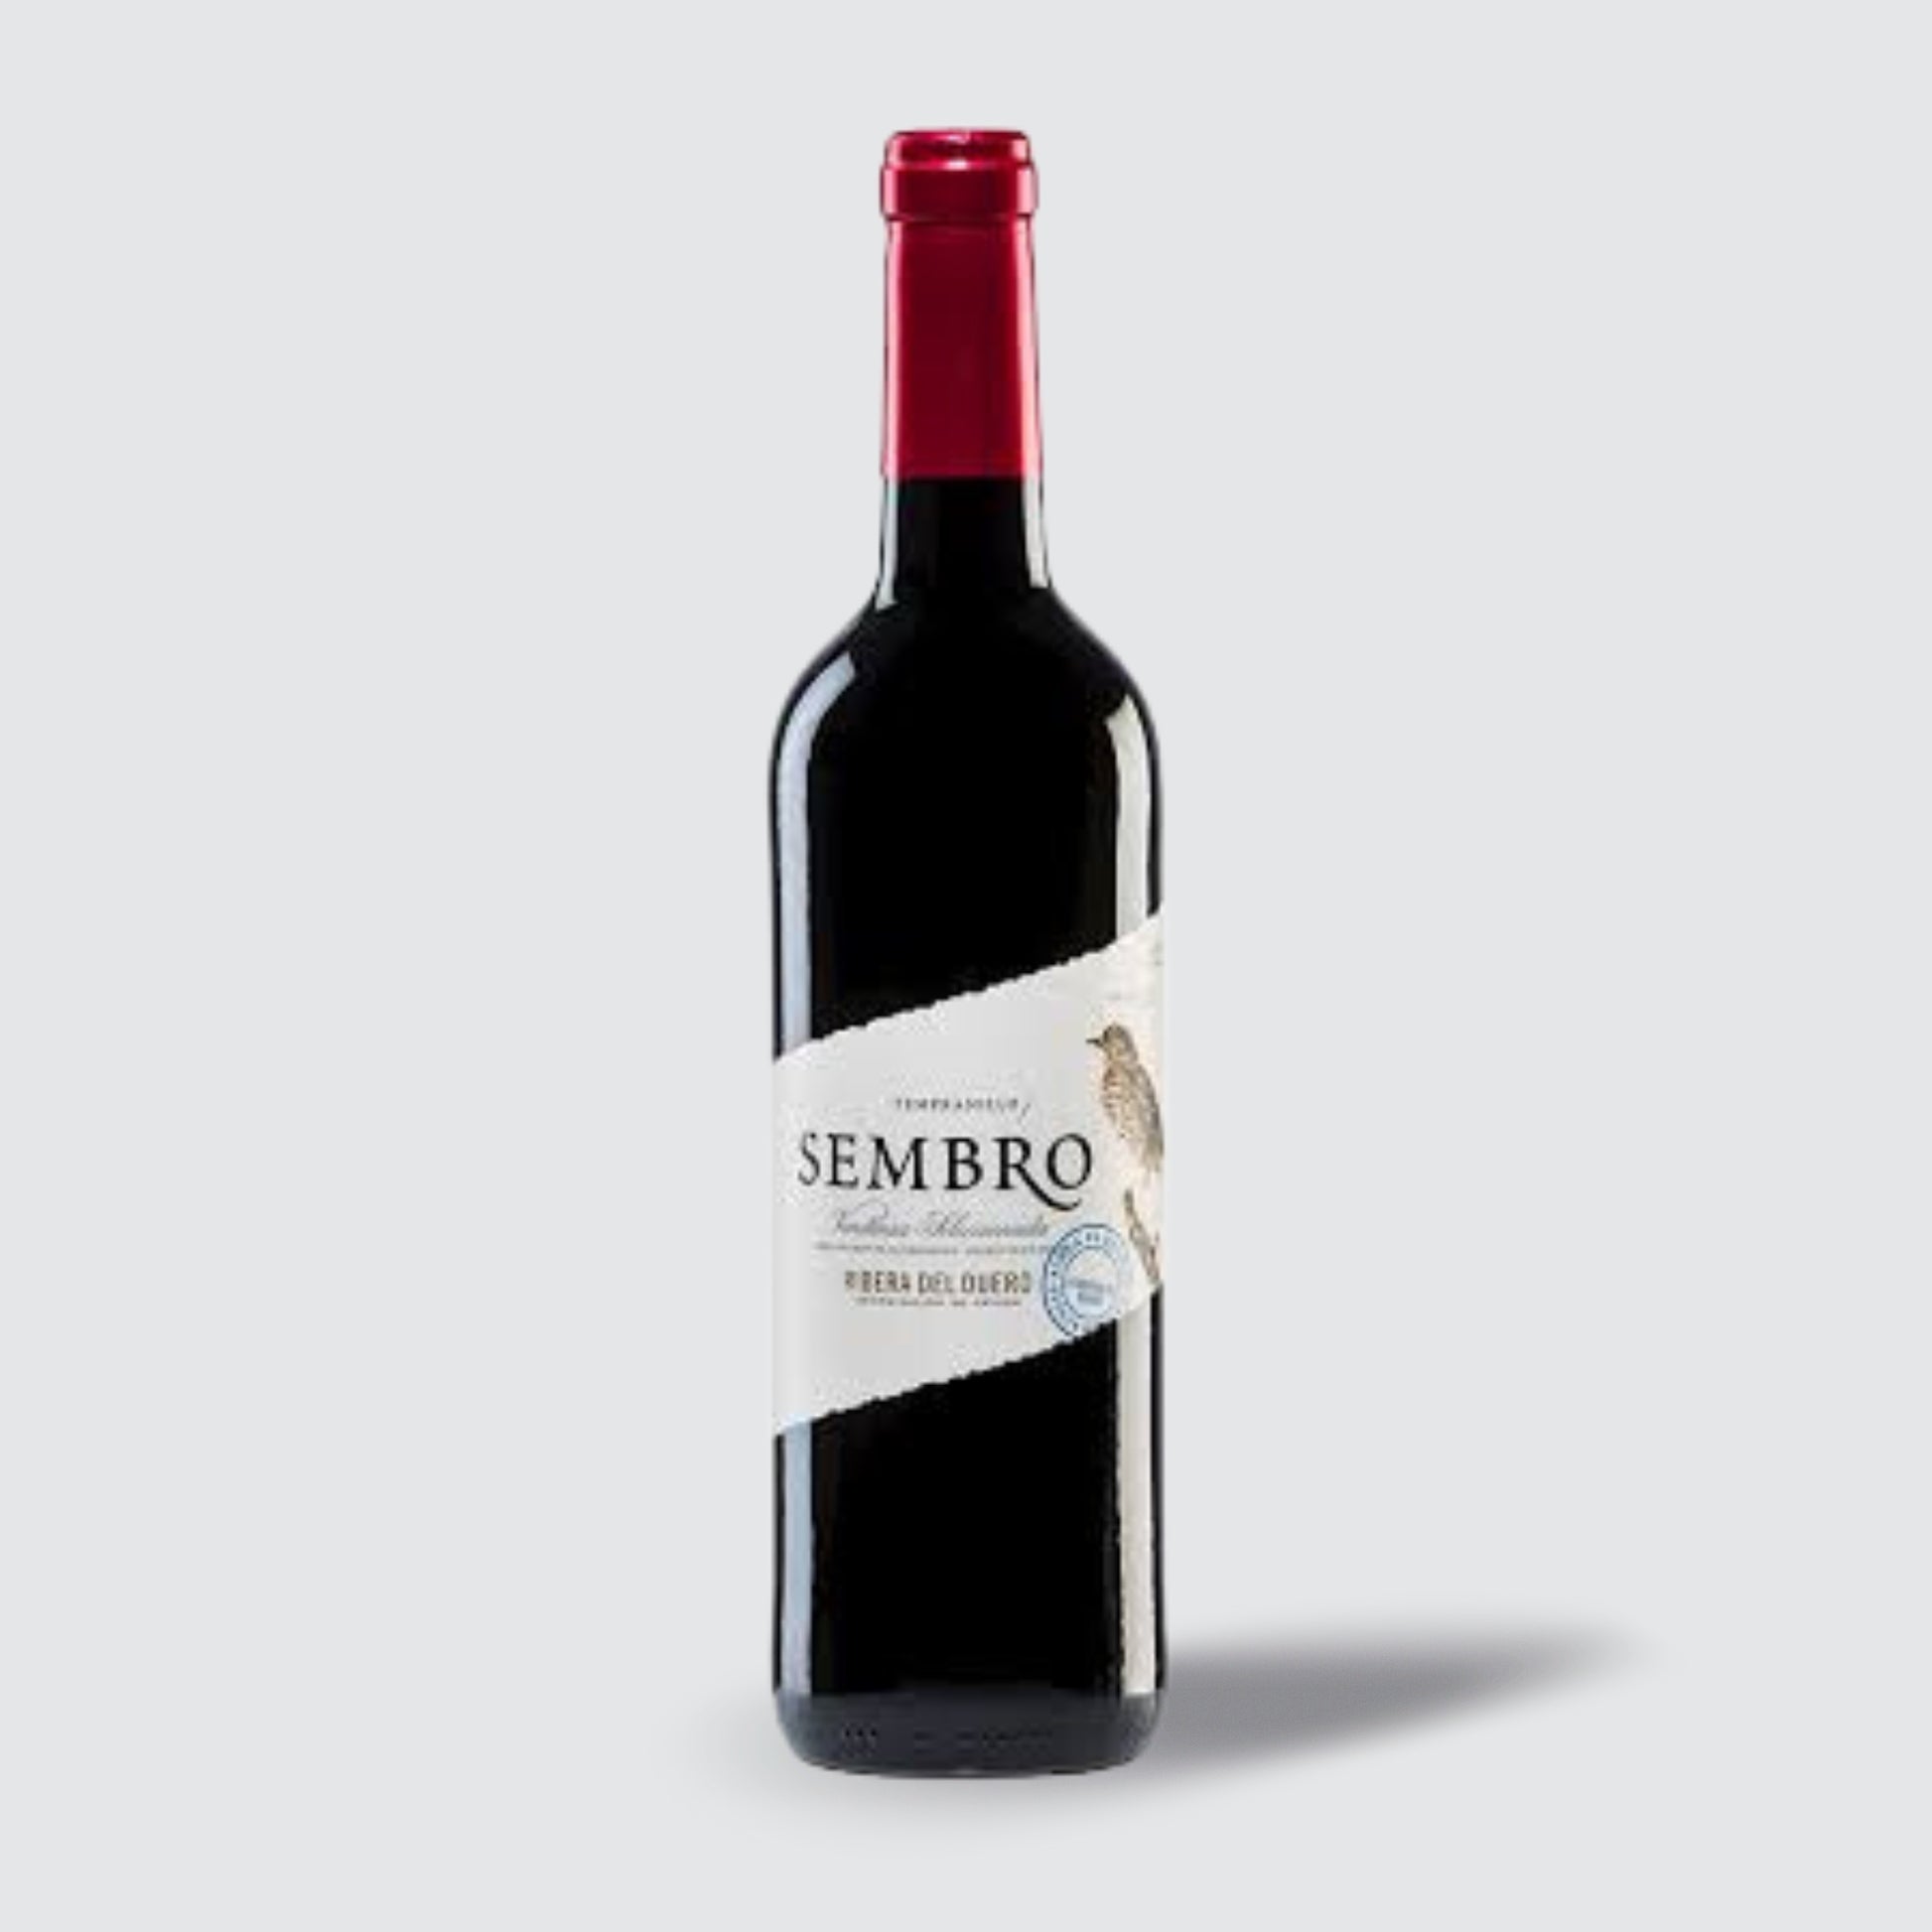 Vinas del Jaro - Sembro 2020 Ribera Del Duero Tempranillo Red Wine